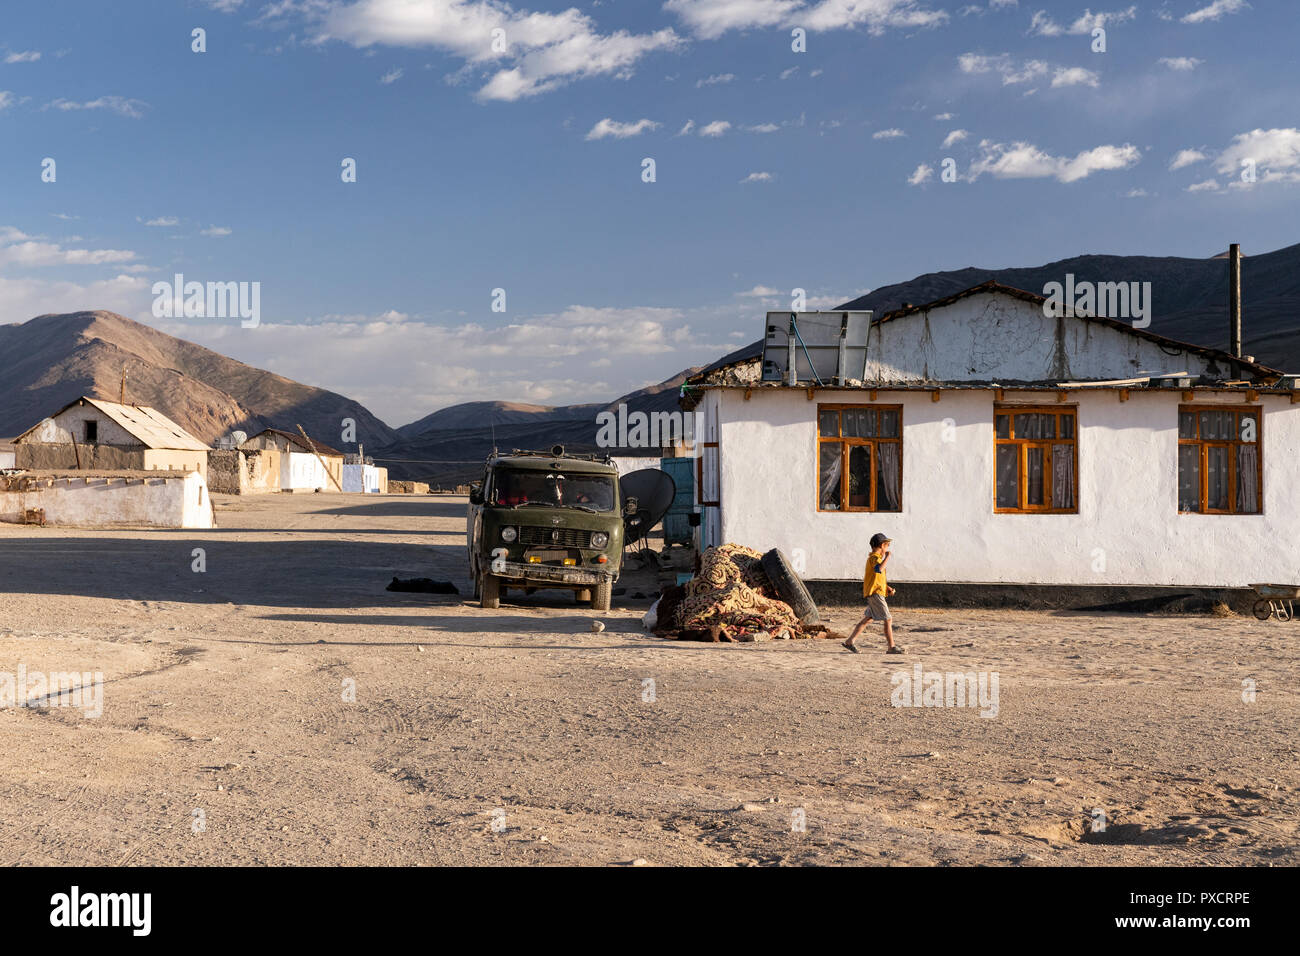 Chico local camina por una casa encaladas en la noche en la aldea, Bulunkul Bulunkul, el Pamir Highway, Gorno Badakhshan, Tayikistán Foto de stock